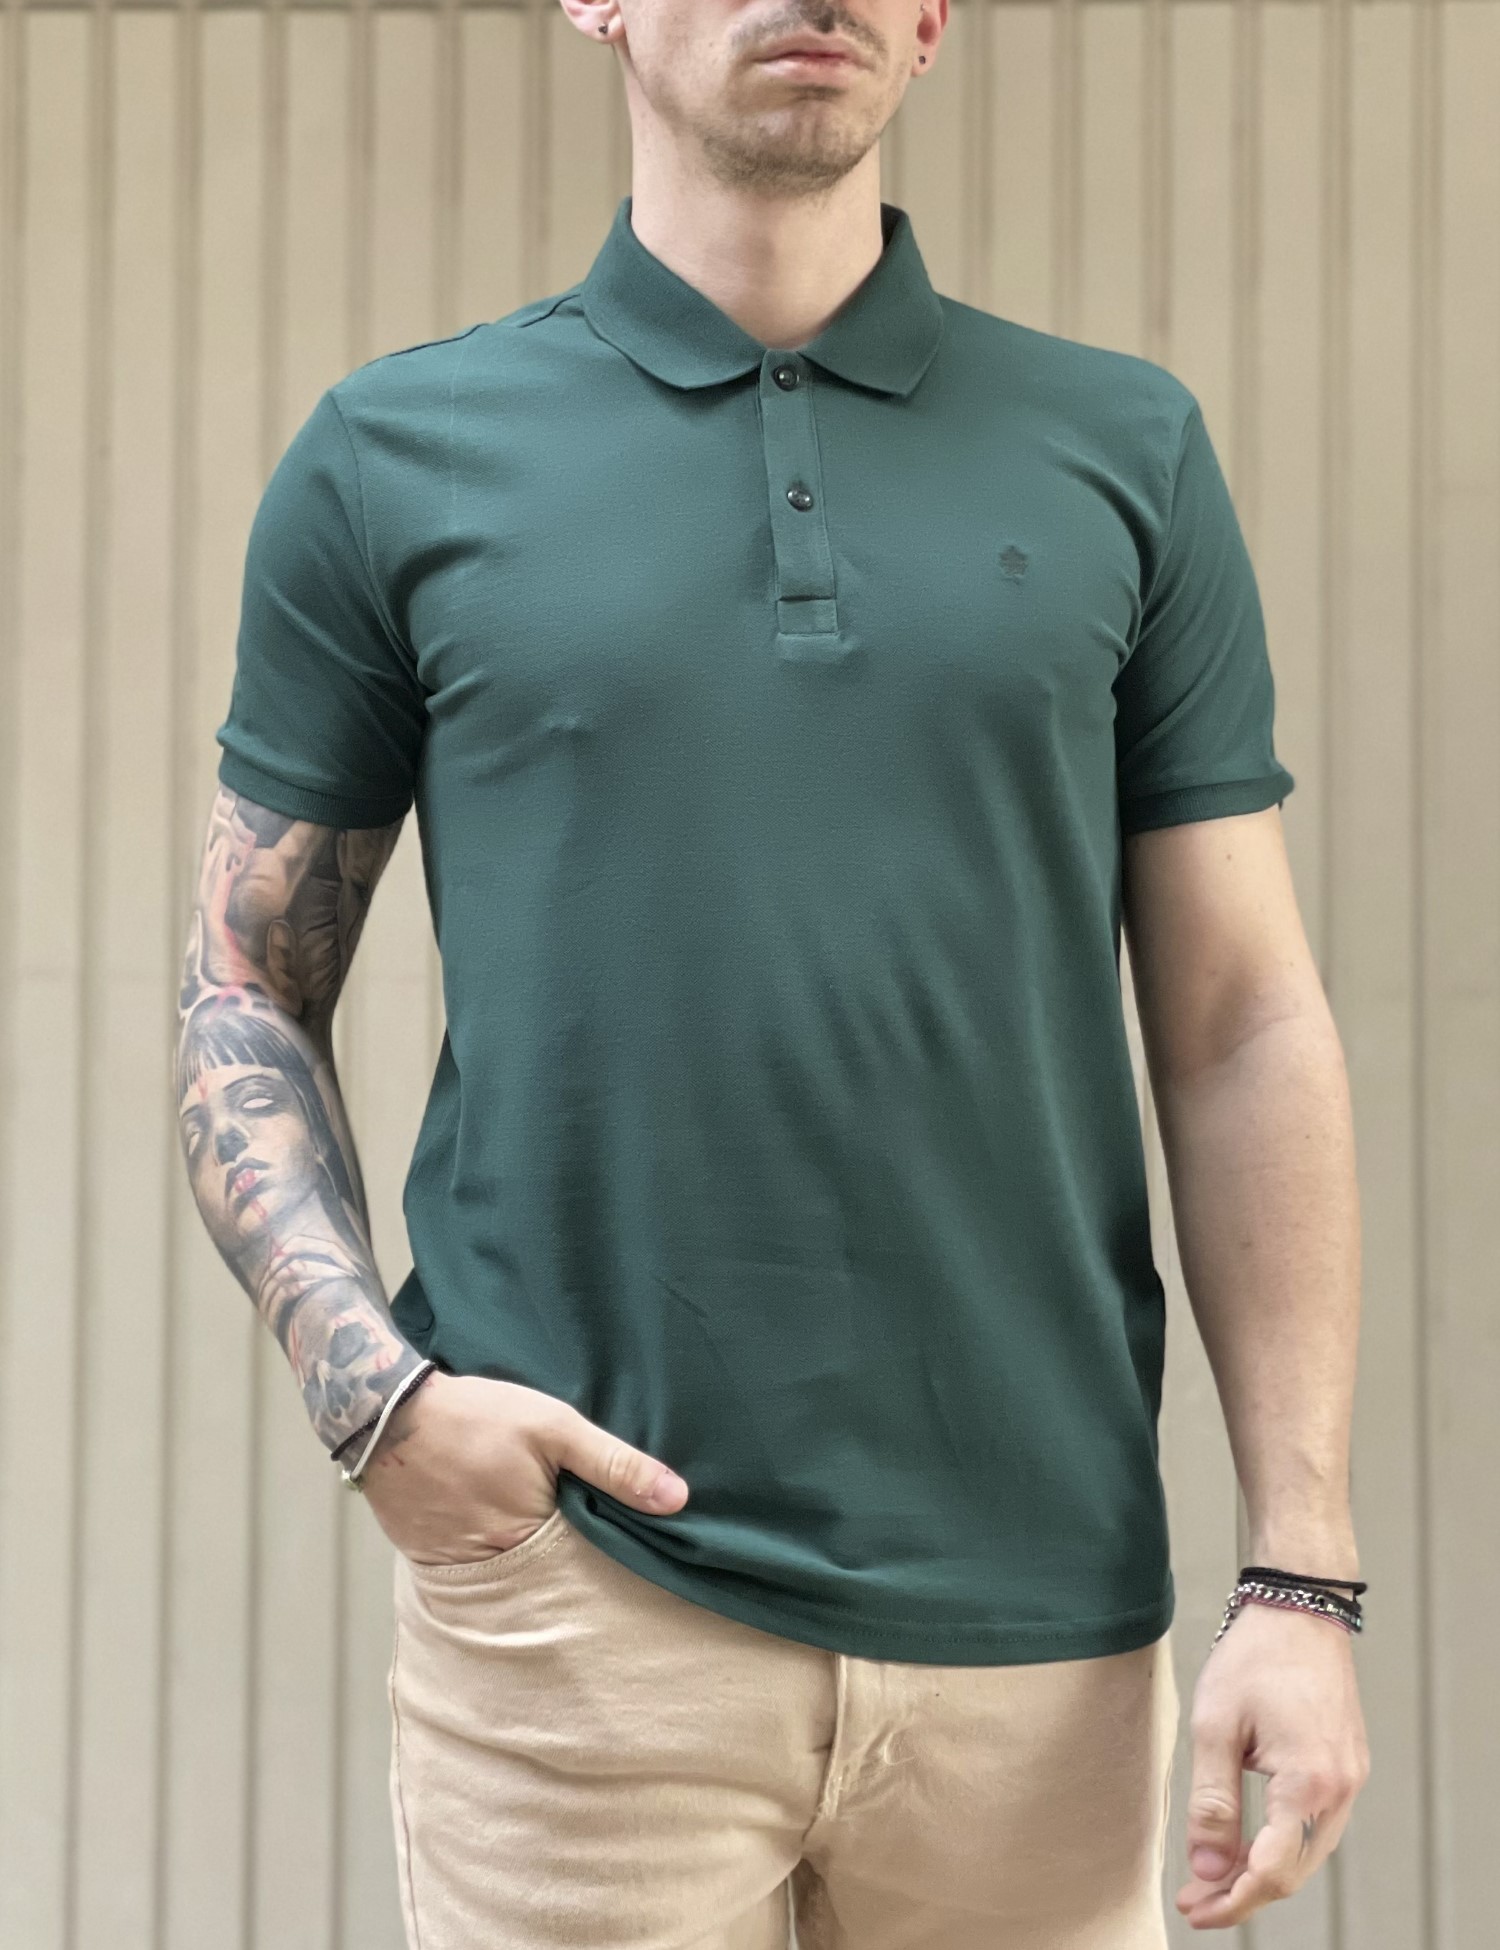 – Ανδρικη πρασινη βαμβακερη κοντομανικη μπλουζα Polo 4331L